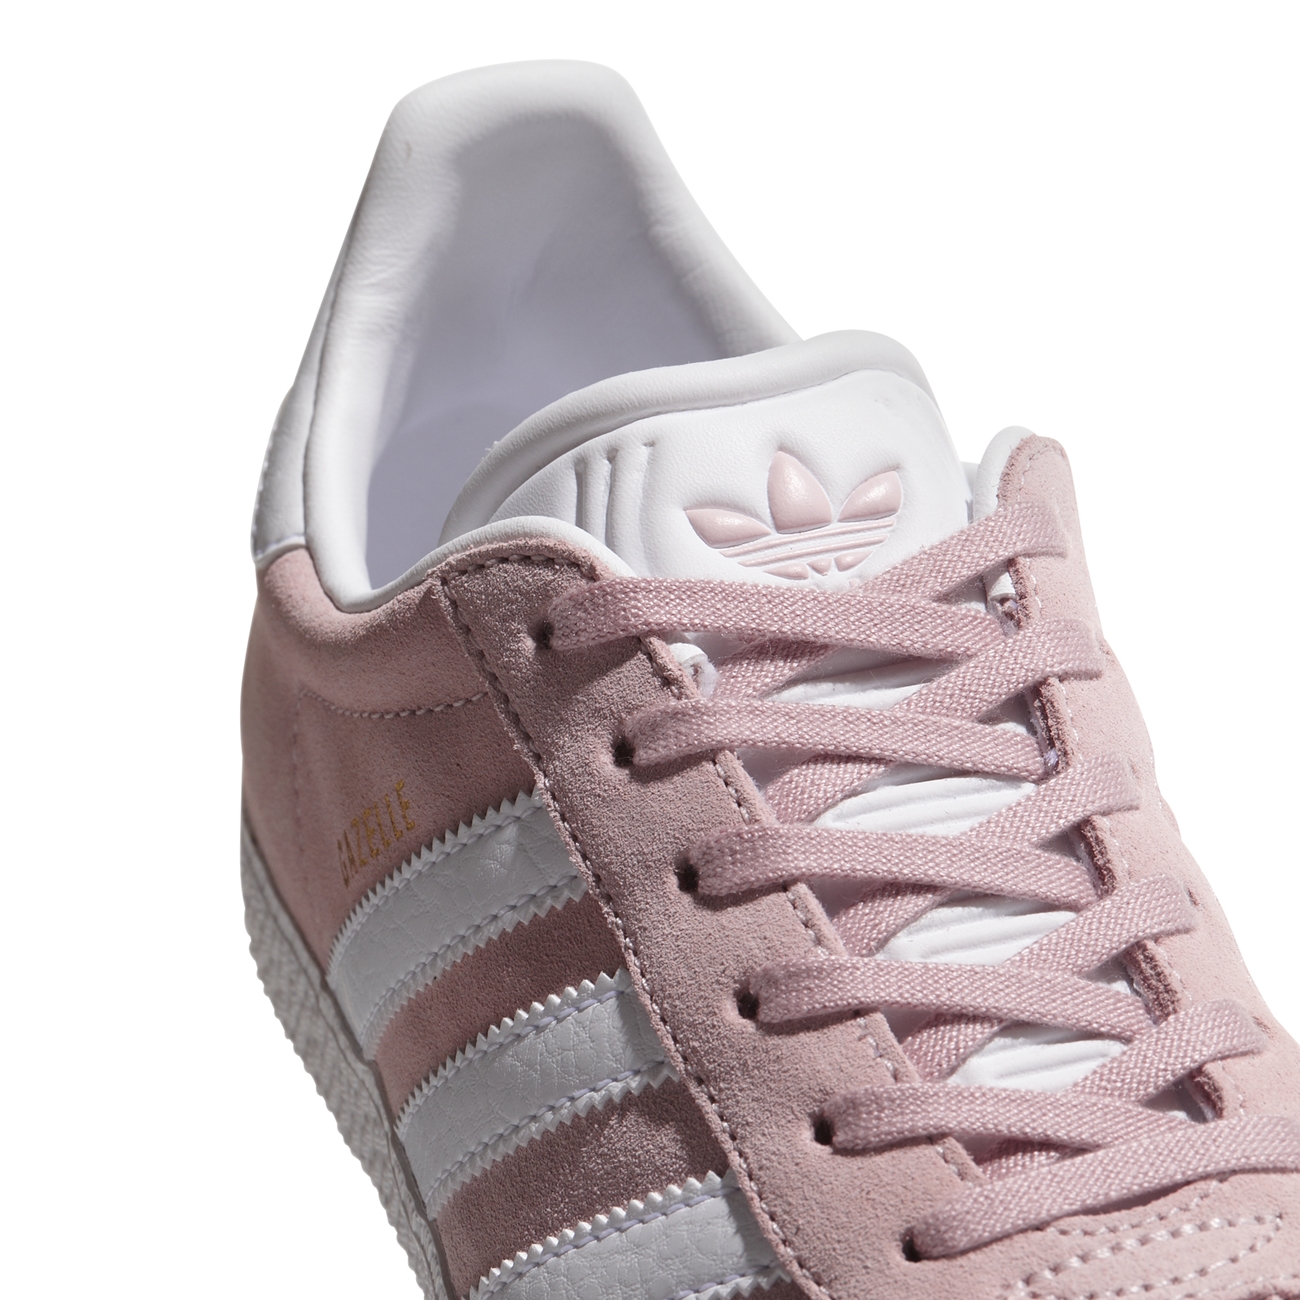 Adidas Originals Gazelle J Pink/ White/ Gold)